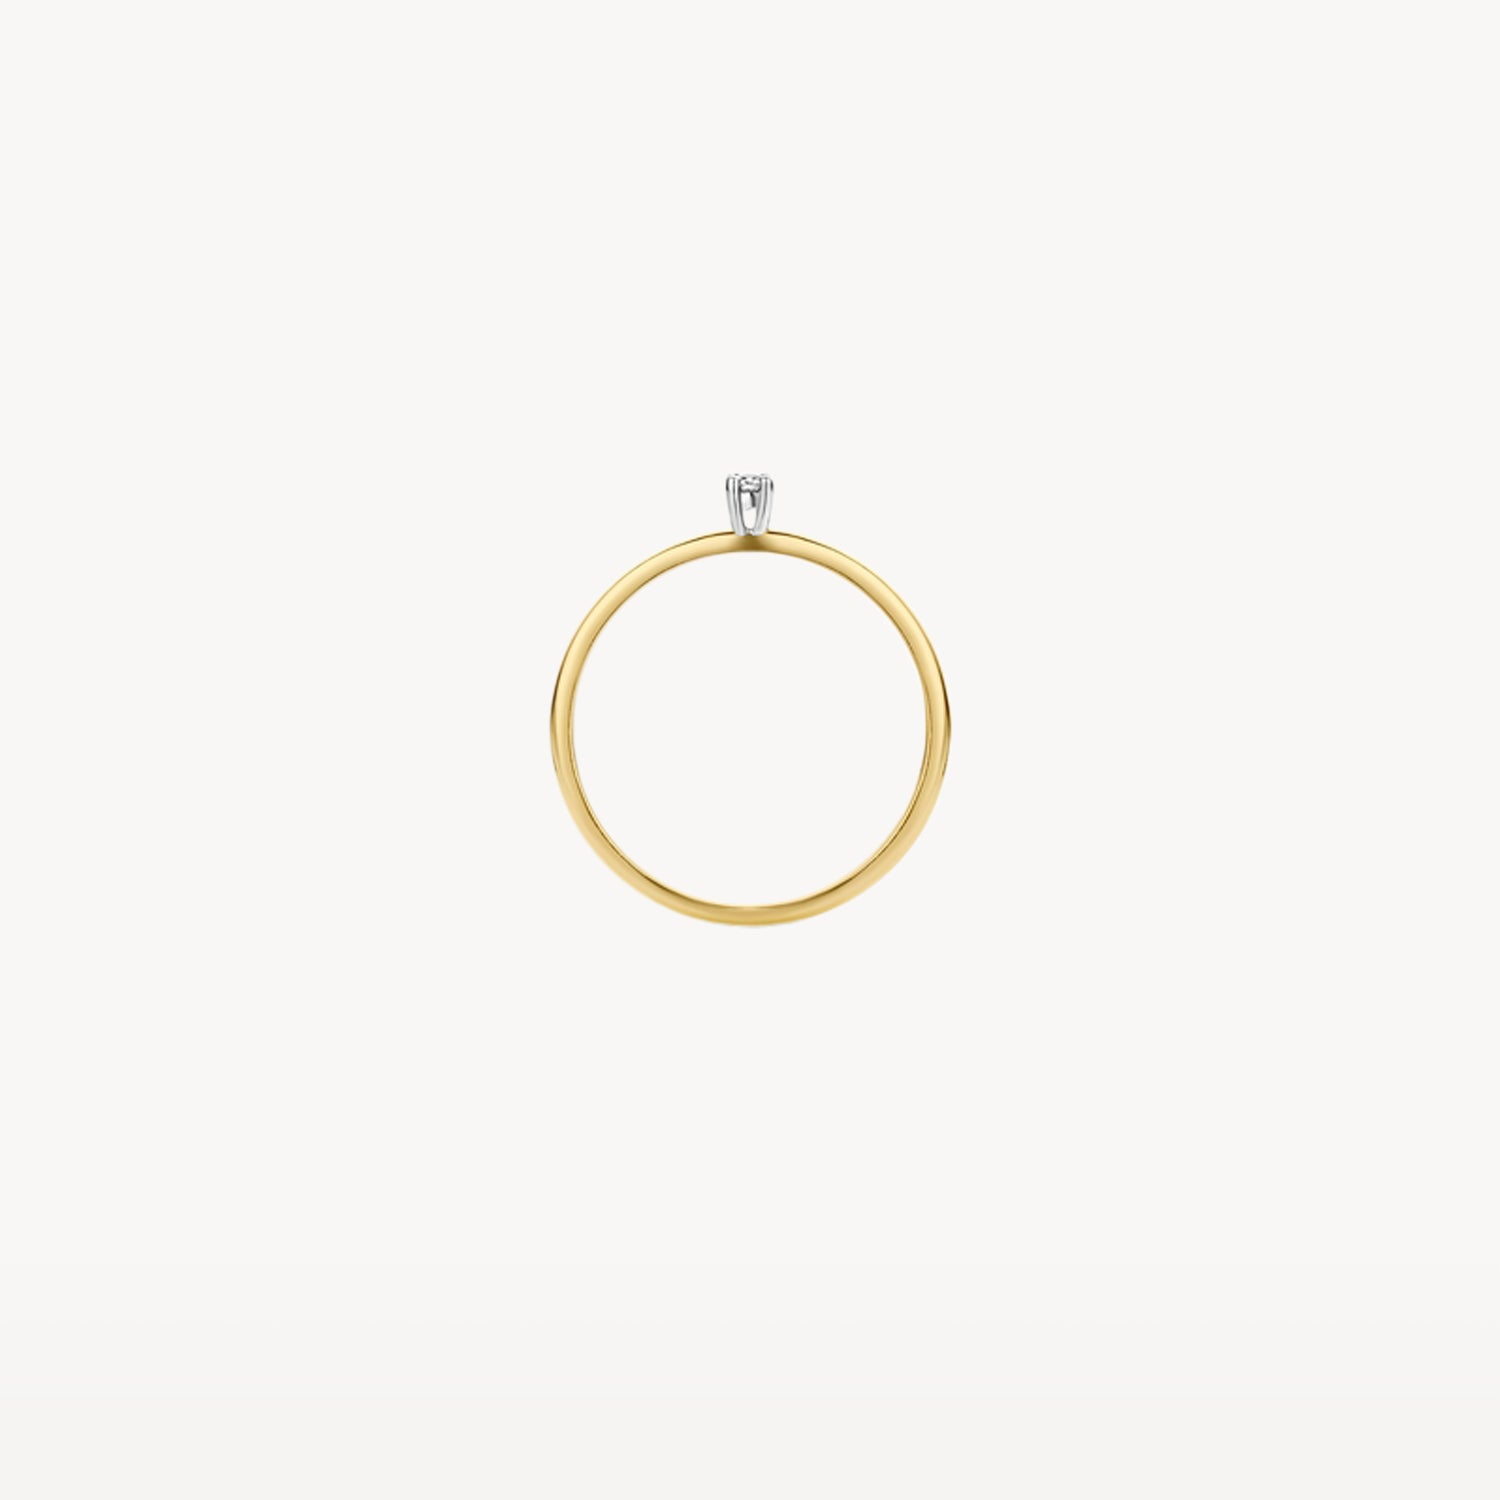 Ring 1600BDI - 585er Gelb- und Weißgold mit Diamant